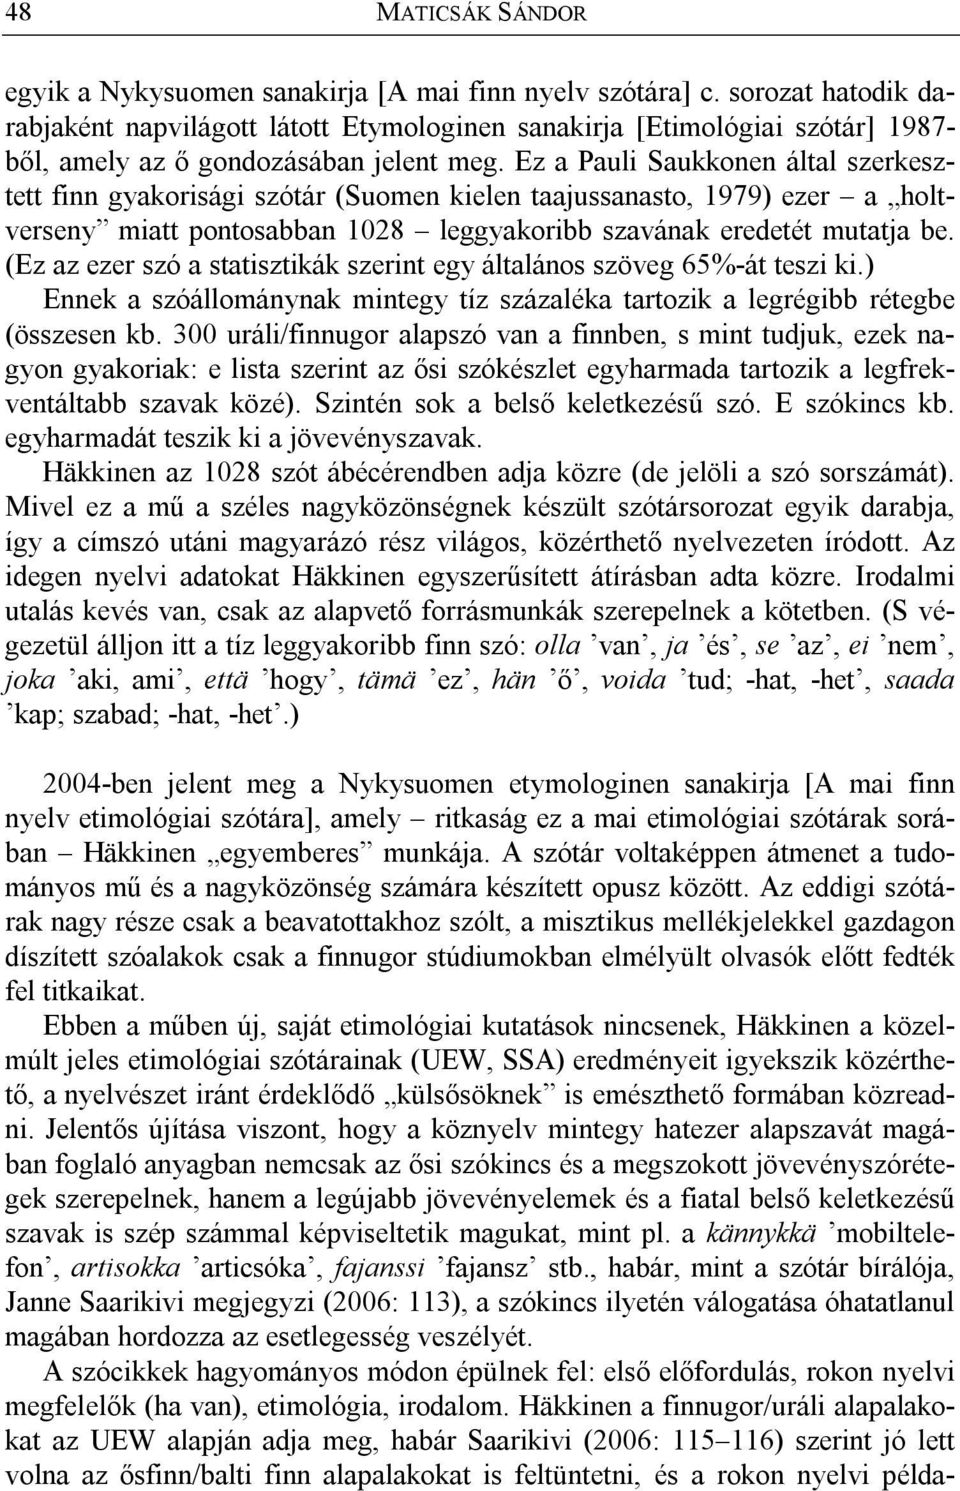 Ez a Pauli Saukkonen által szerkesztett finn gyakorisági szótár (Suomen kielen taajussanasto, 1979) ezer a holtverseny miatt pontosabban 1028 leggyakoribb szavának eredetét mutatja be.